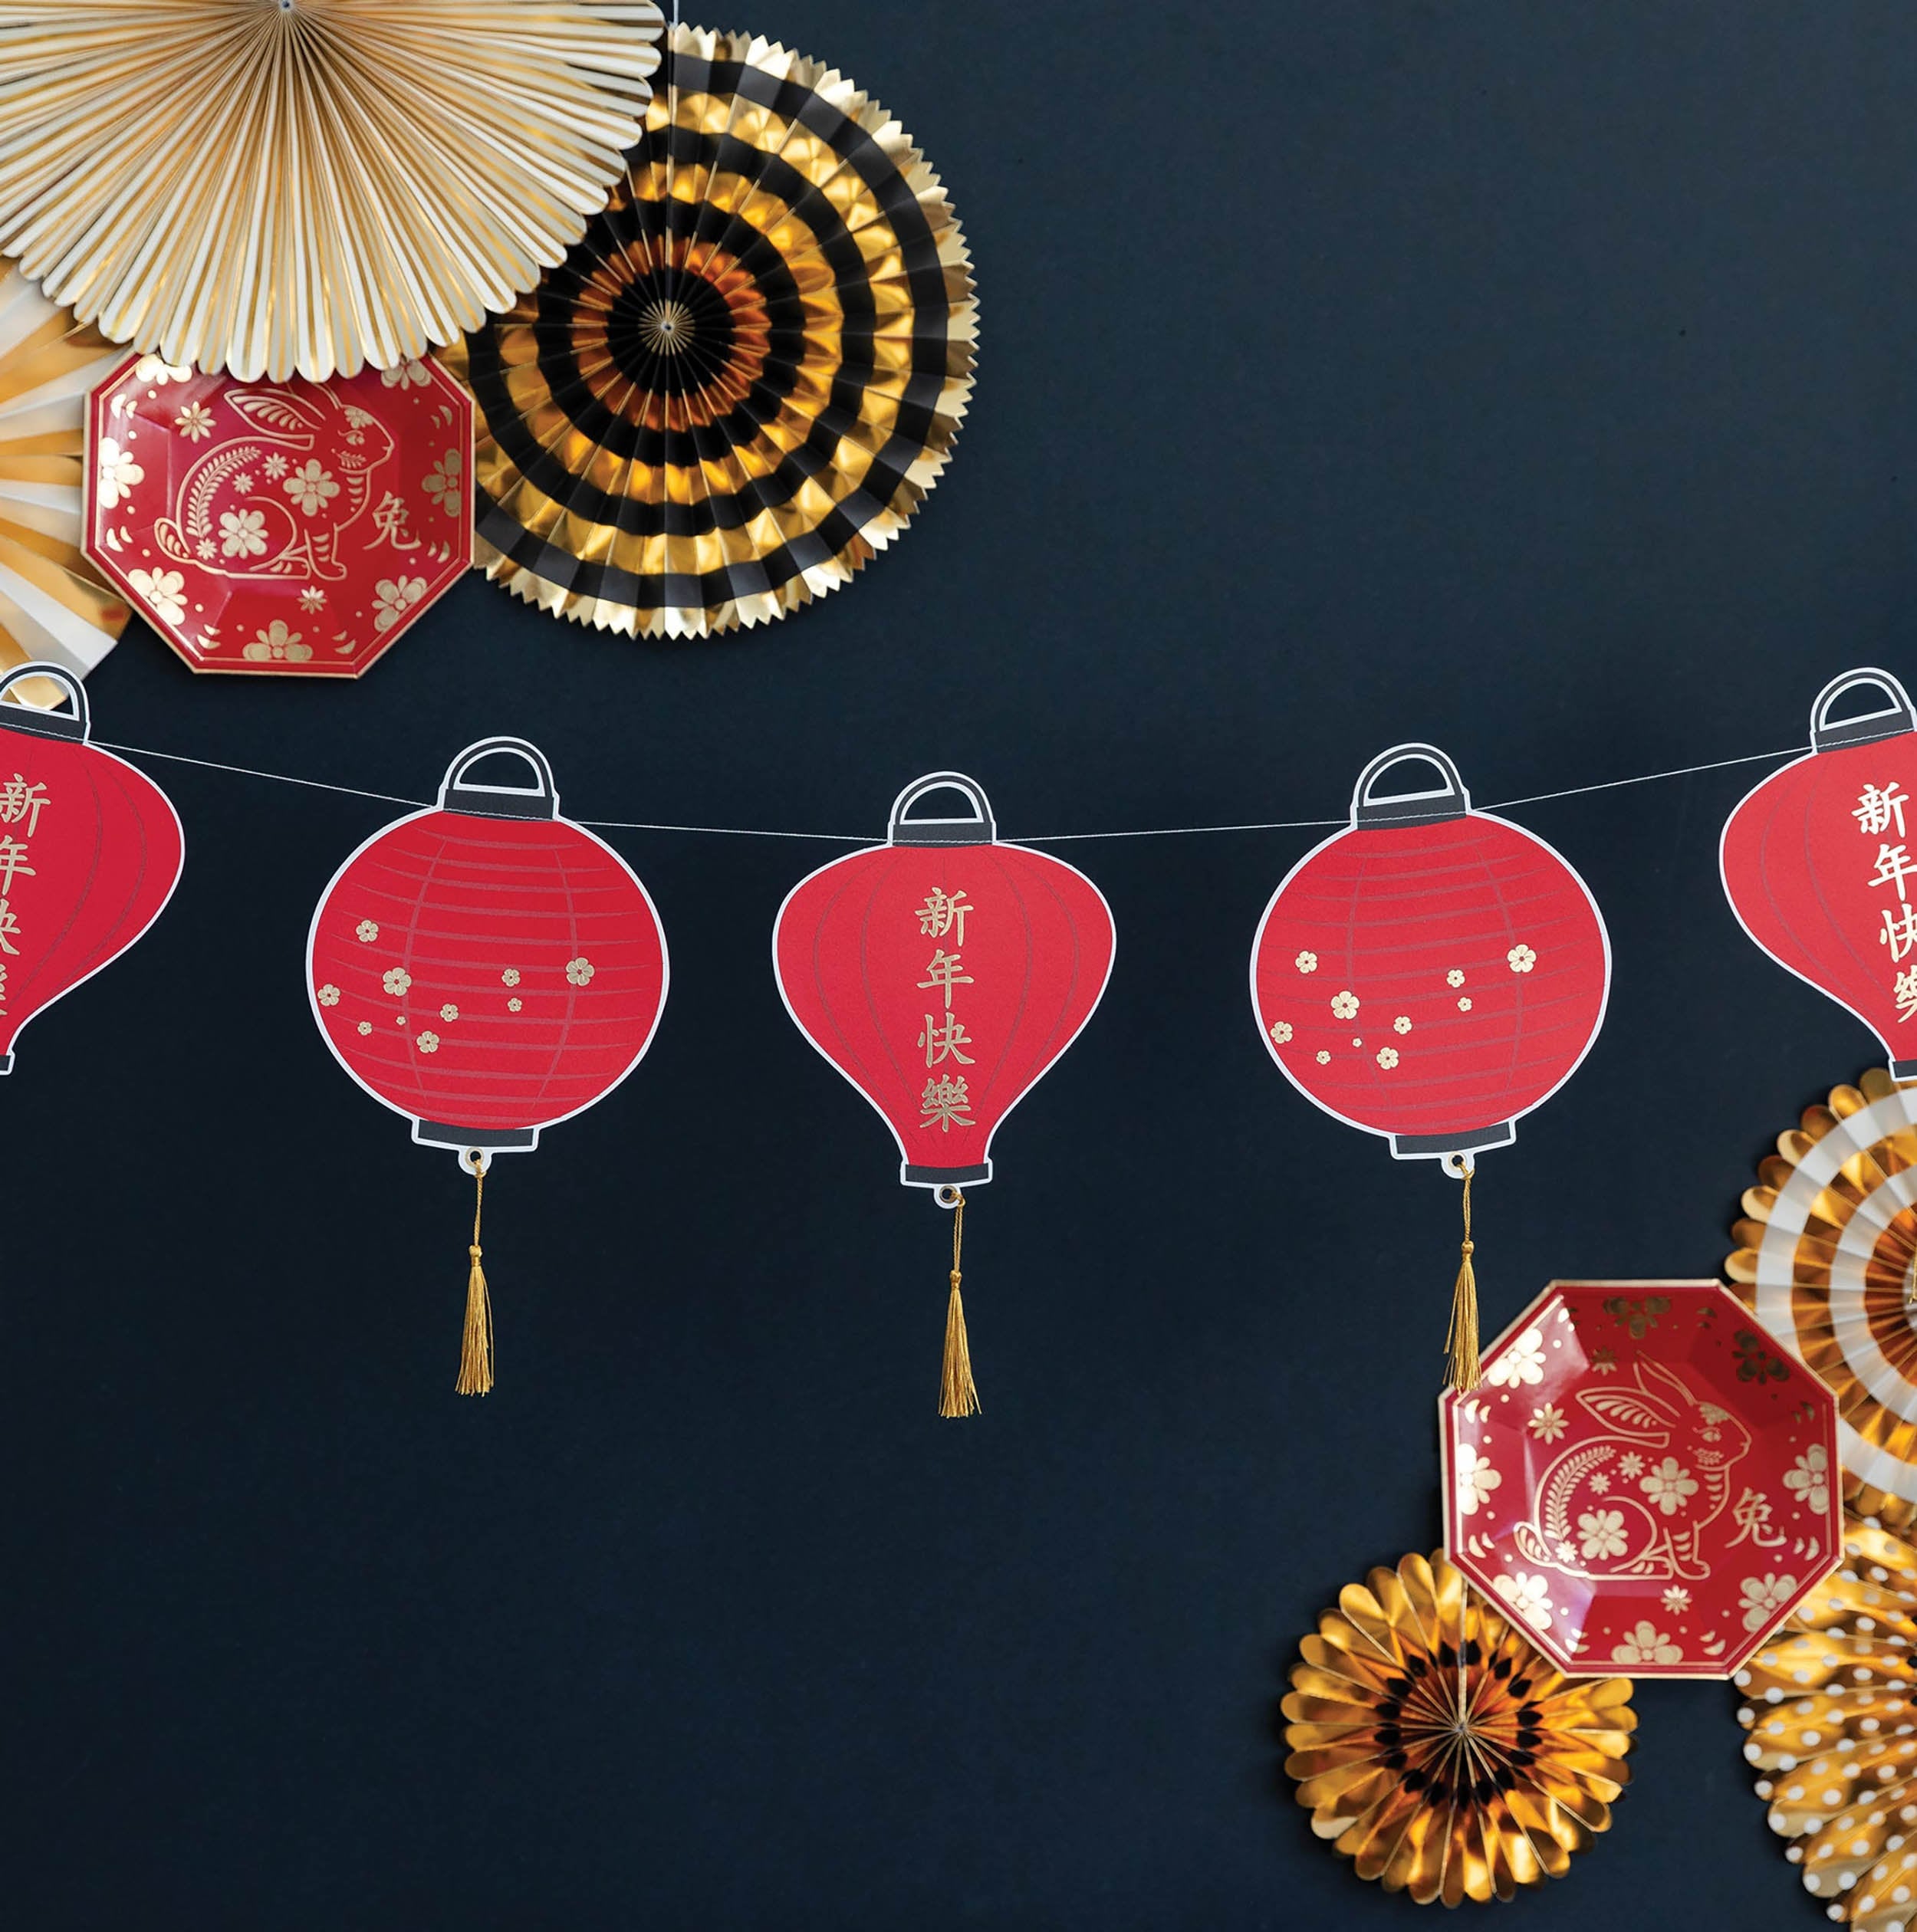 Lantern Banner | Lunar New Year Decorations - Lunar New Year Lanterns - Chinese New Year Decorations - Chinese Red Lanterns